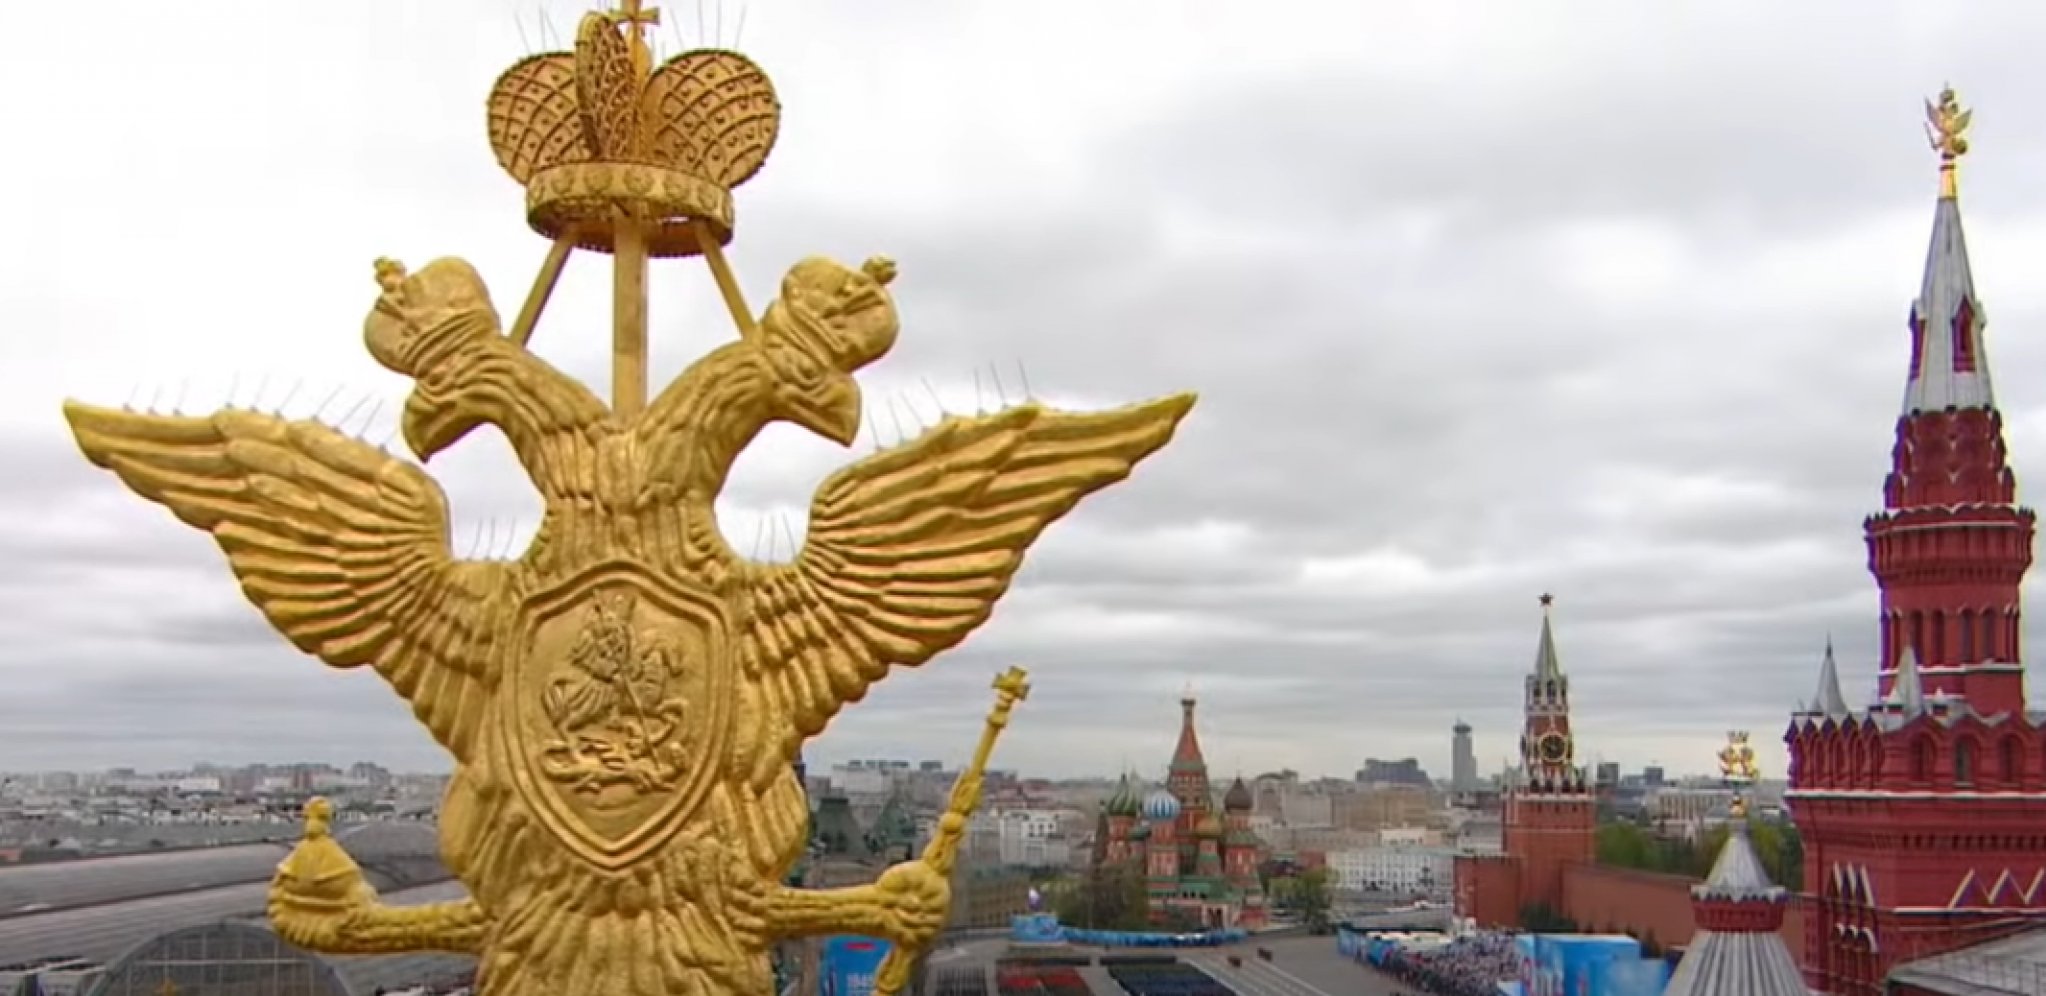 PAO DOGOVOR! Moskva dobila pismene garancije od Kijeva